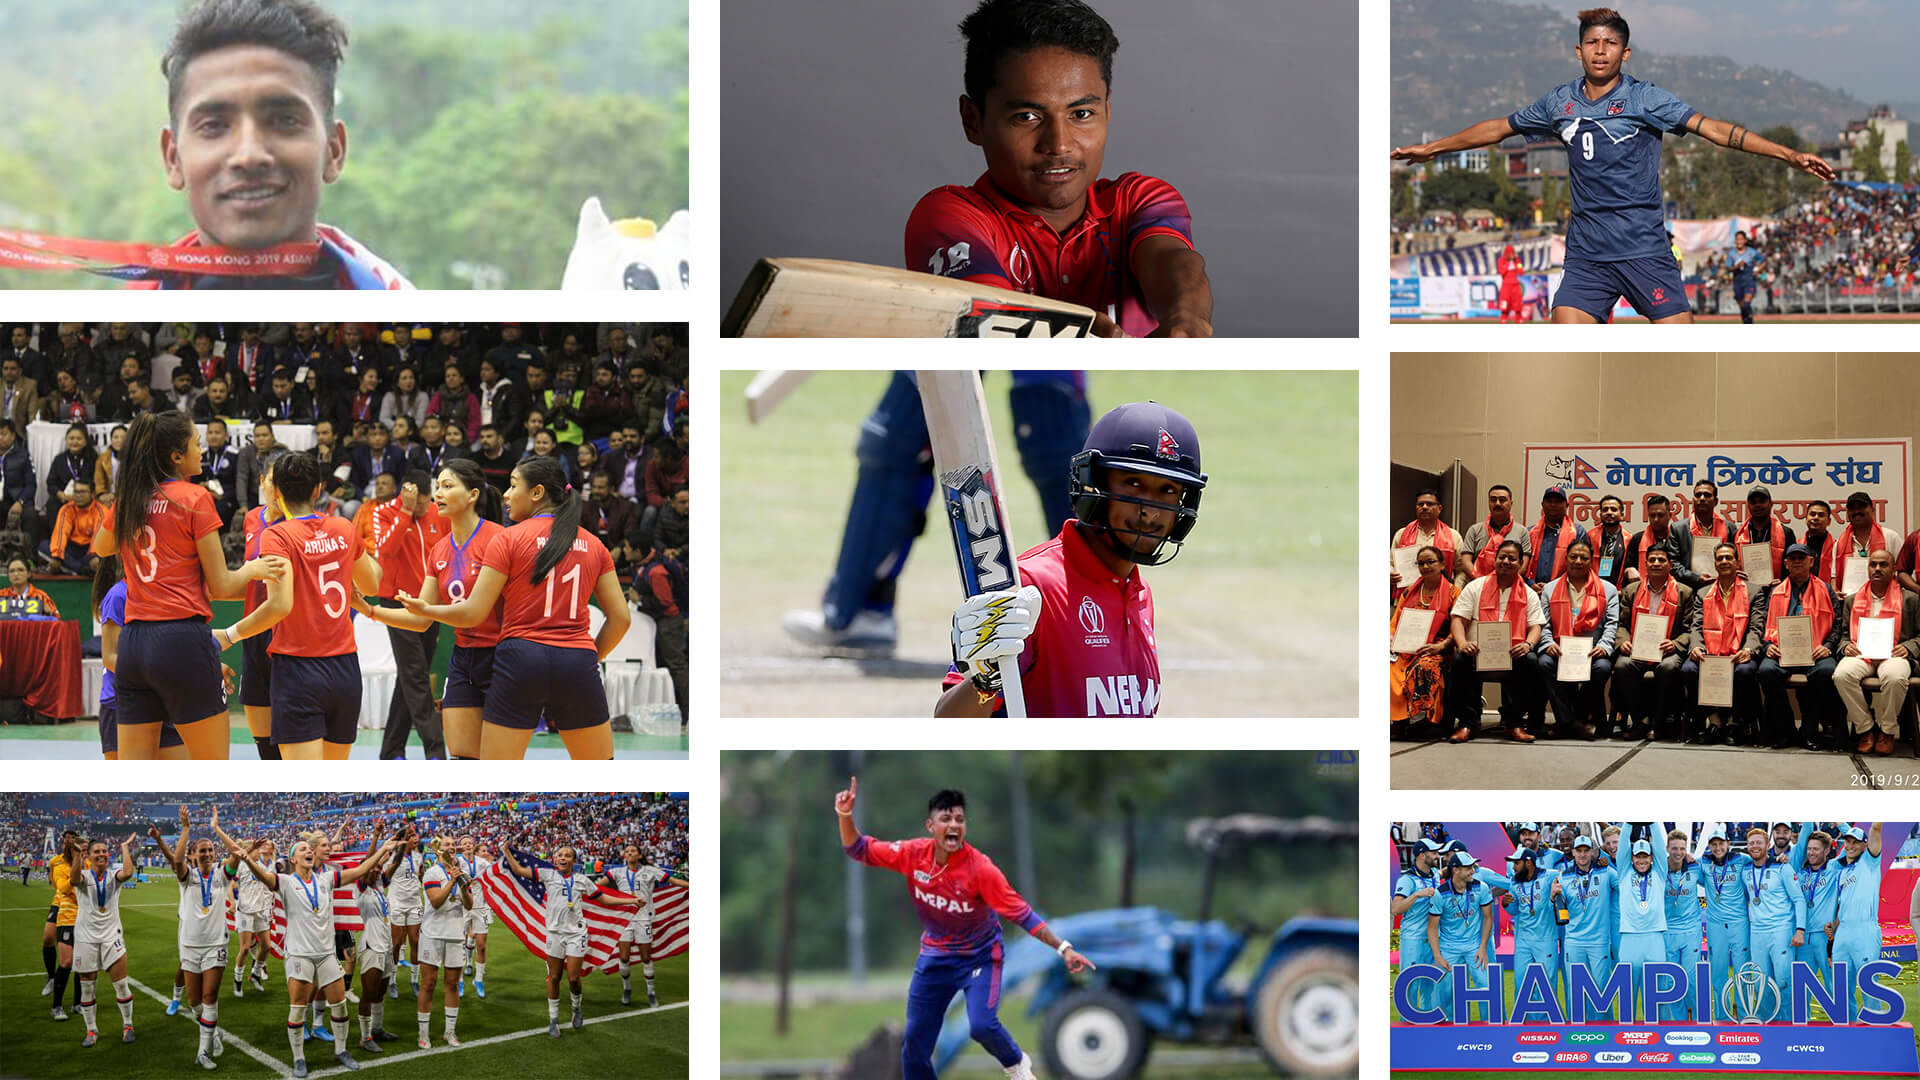  विश्व क्रिकेटमा नयाँ च्याम्पियन, नेपाललाई ५१ स्वर्ण